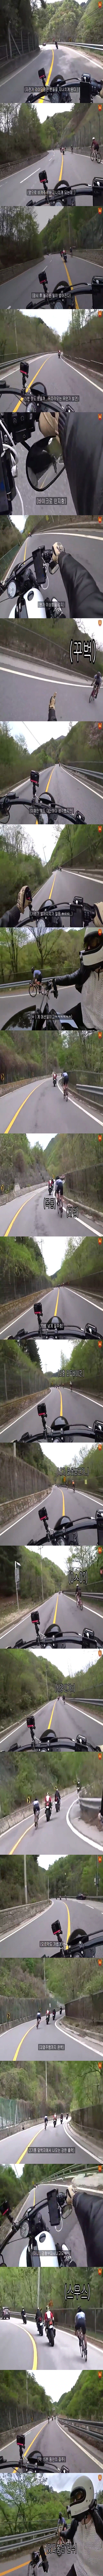 오토바이를 따라오는 괴물